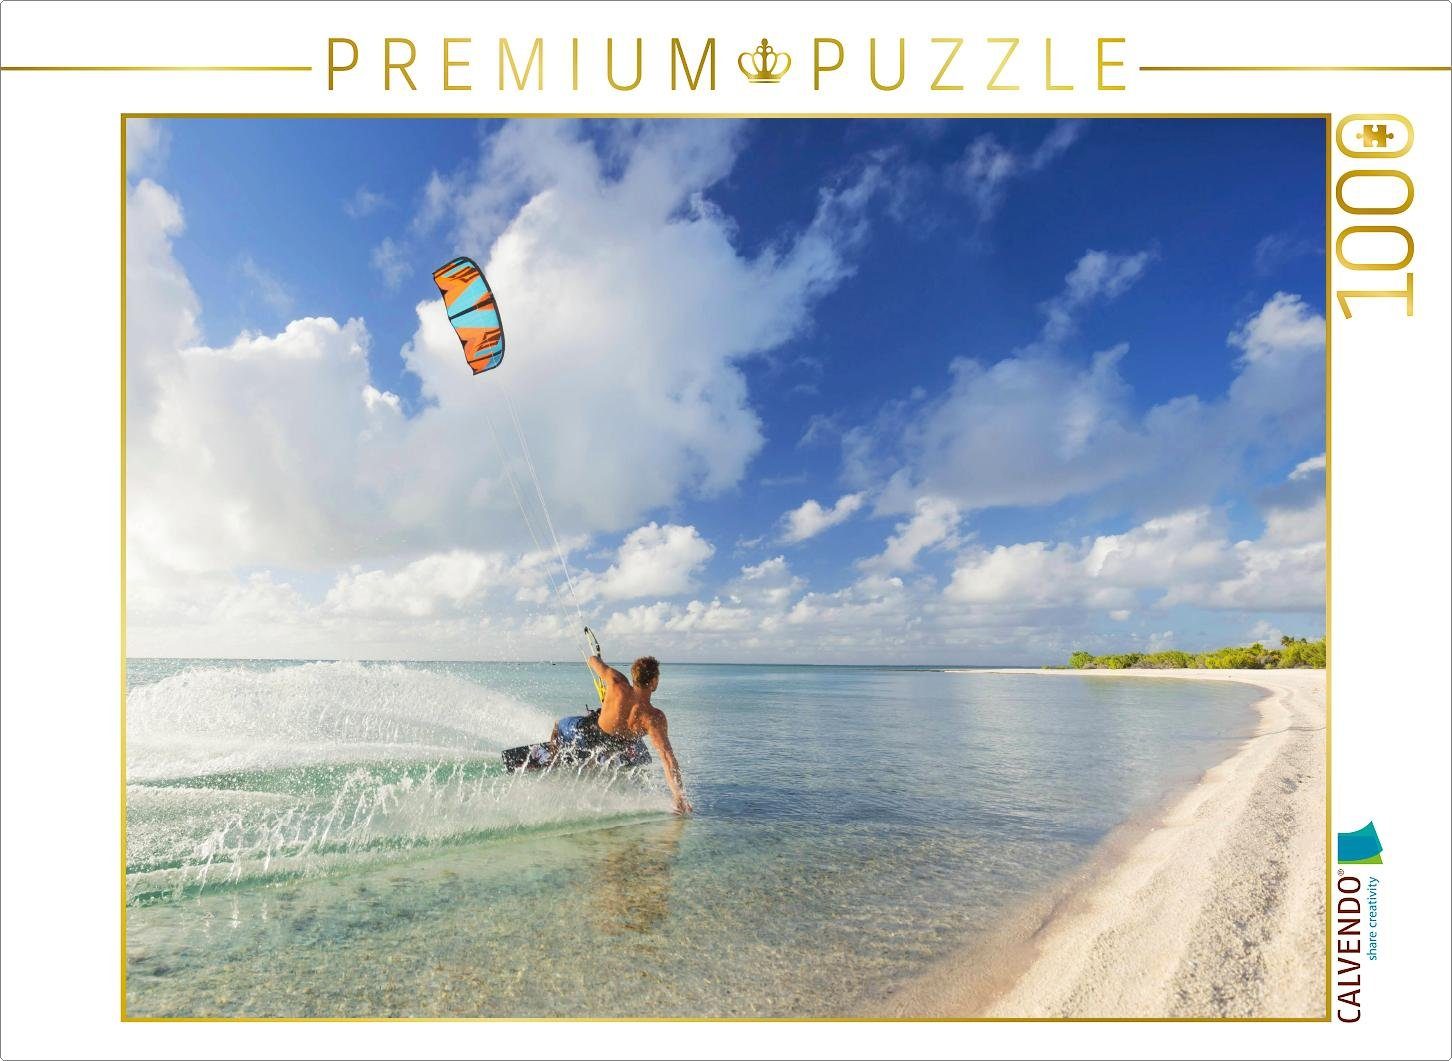 CALVENDO Puzzle CALVENDO Puzzle Athletischer Kiteboarder in einer tropischen Lagune. 1000 Teile Lege-Größe 64 x 48 cm Foto-Puzzle Bild von CALVENDO Verlag, 1000 Puzzleteile